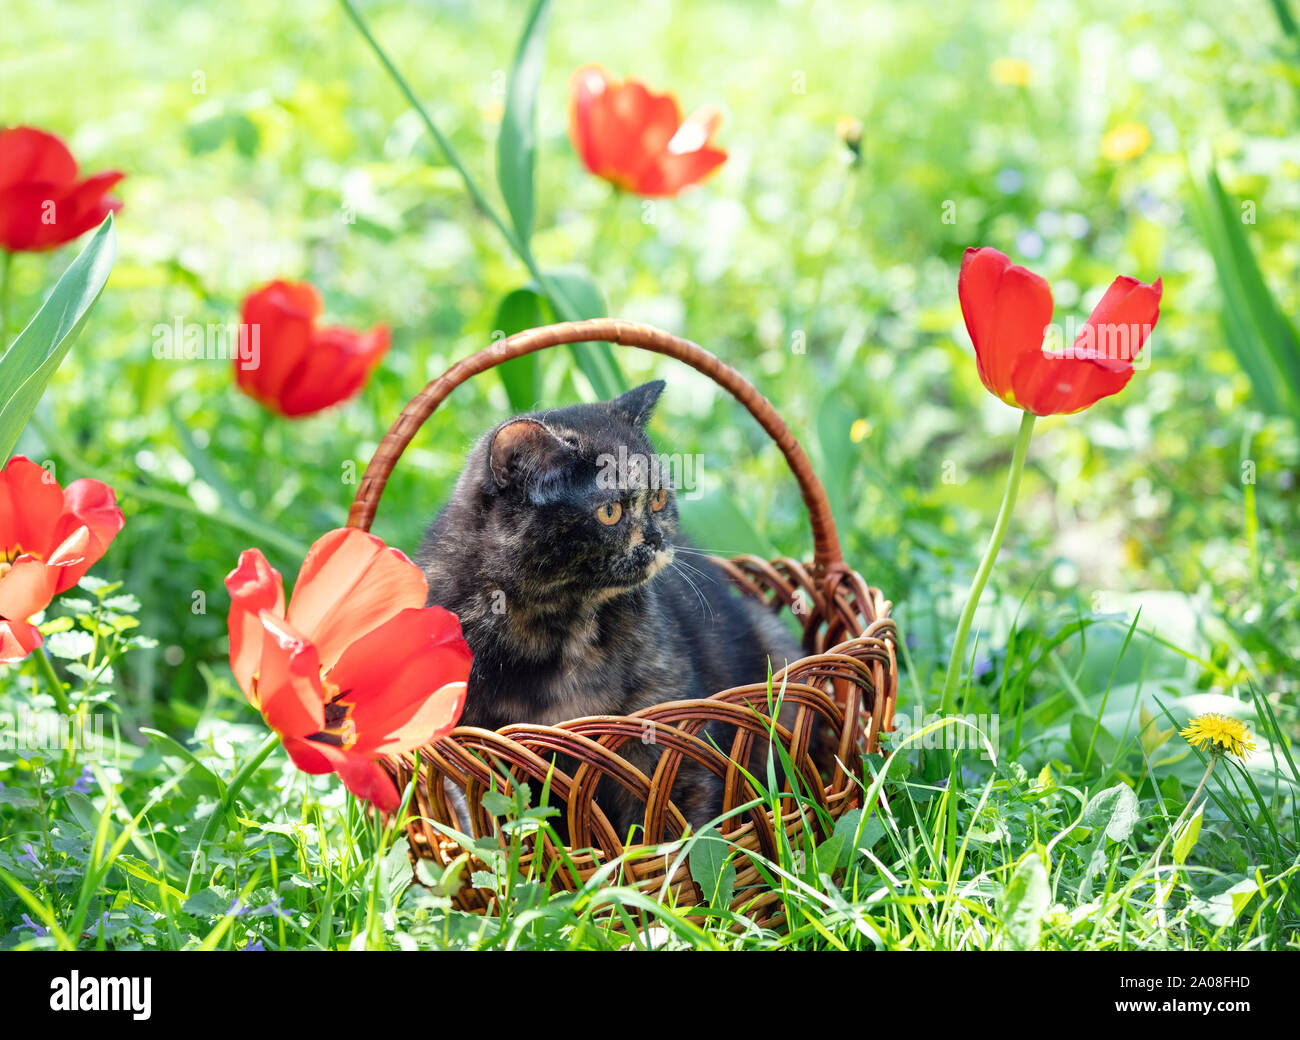 Precioso gatito tortoiseshell se asienta en una canasta cerca de tulipanes en un spring garden Foto de stock